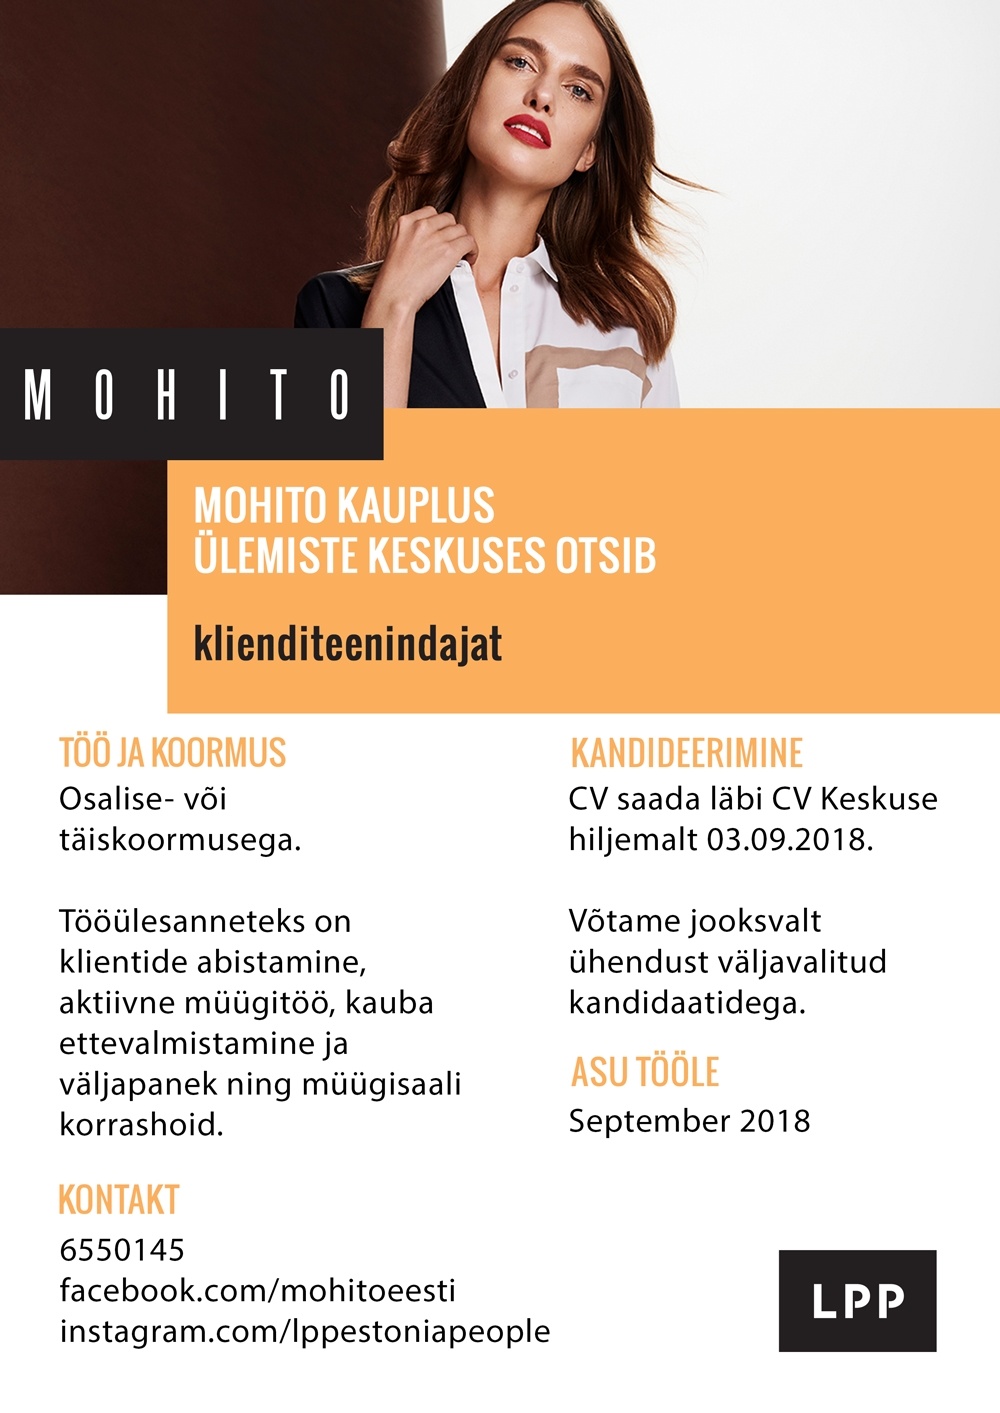 LPP Estonia OÜ Klienditeenindaja (osaline- või täiskoormus) Ülemiste keskuse MOHITO kauplusesse